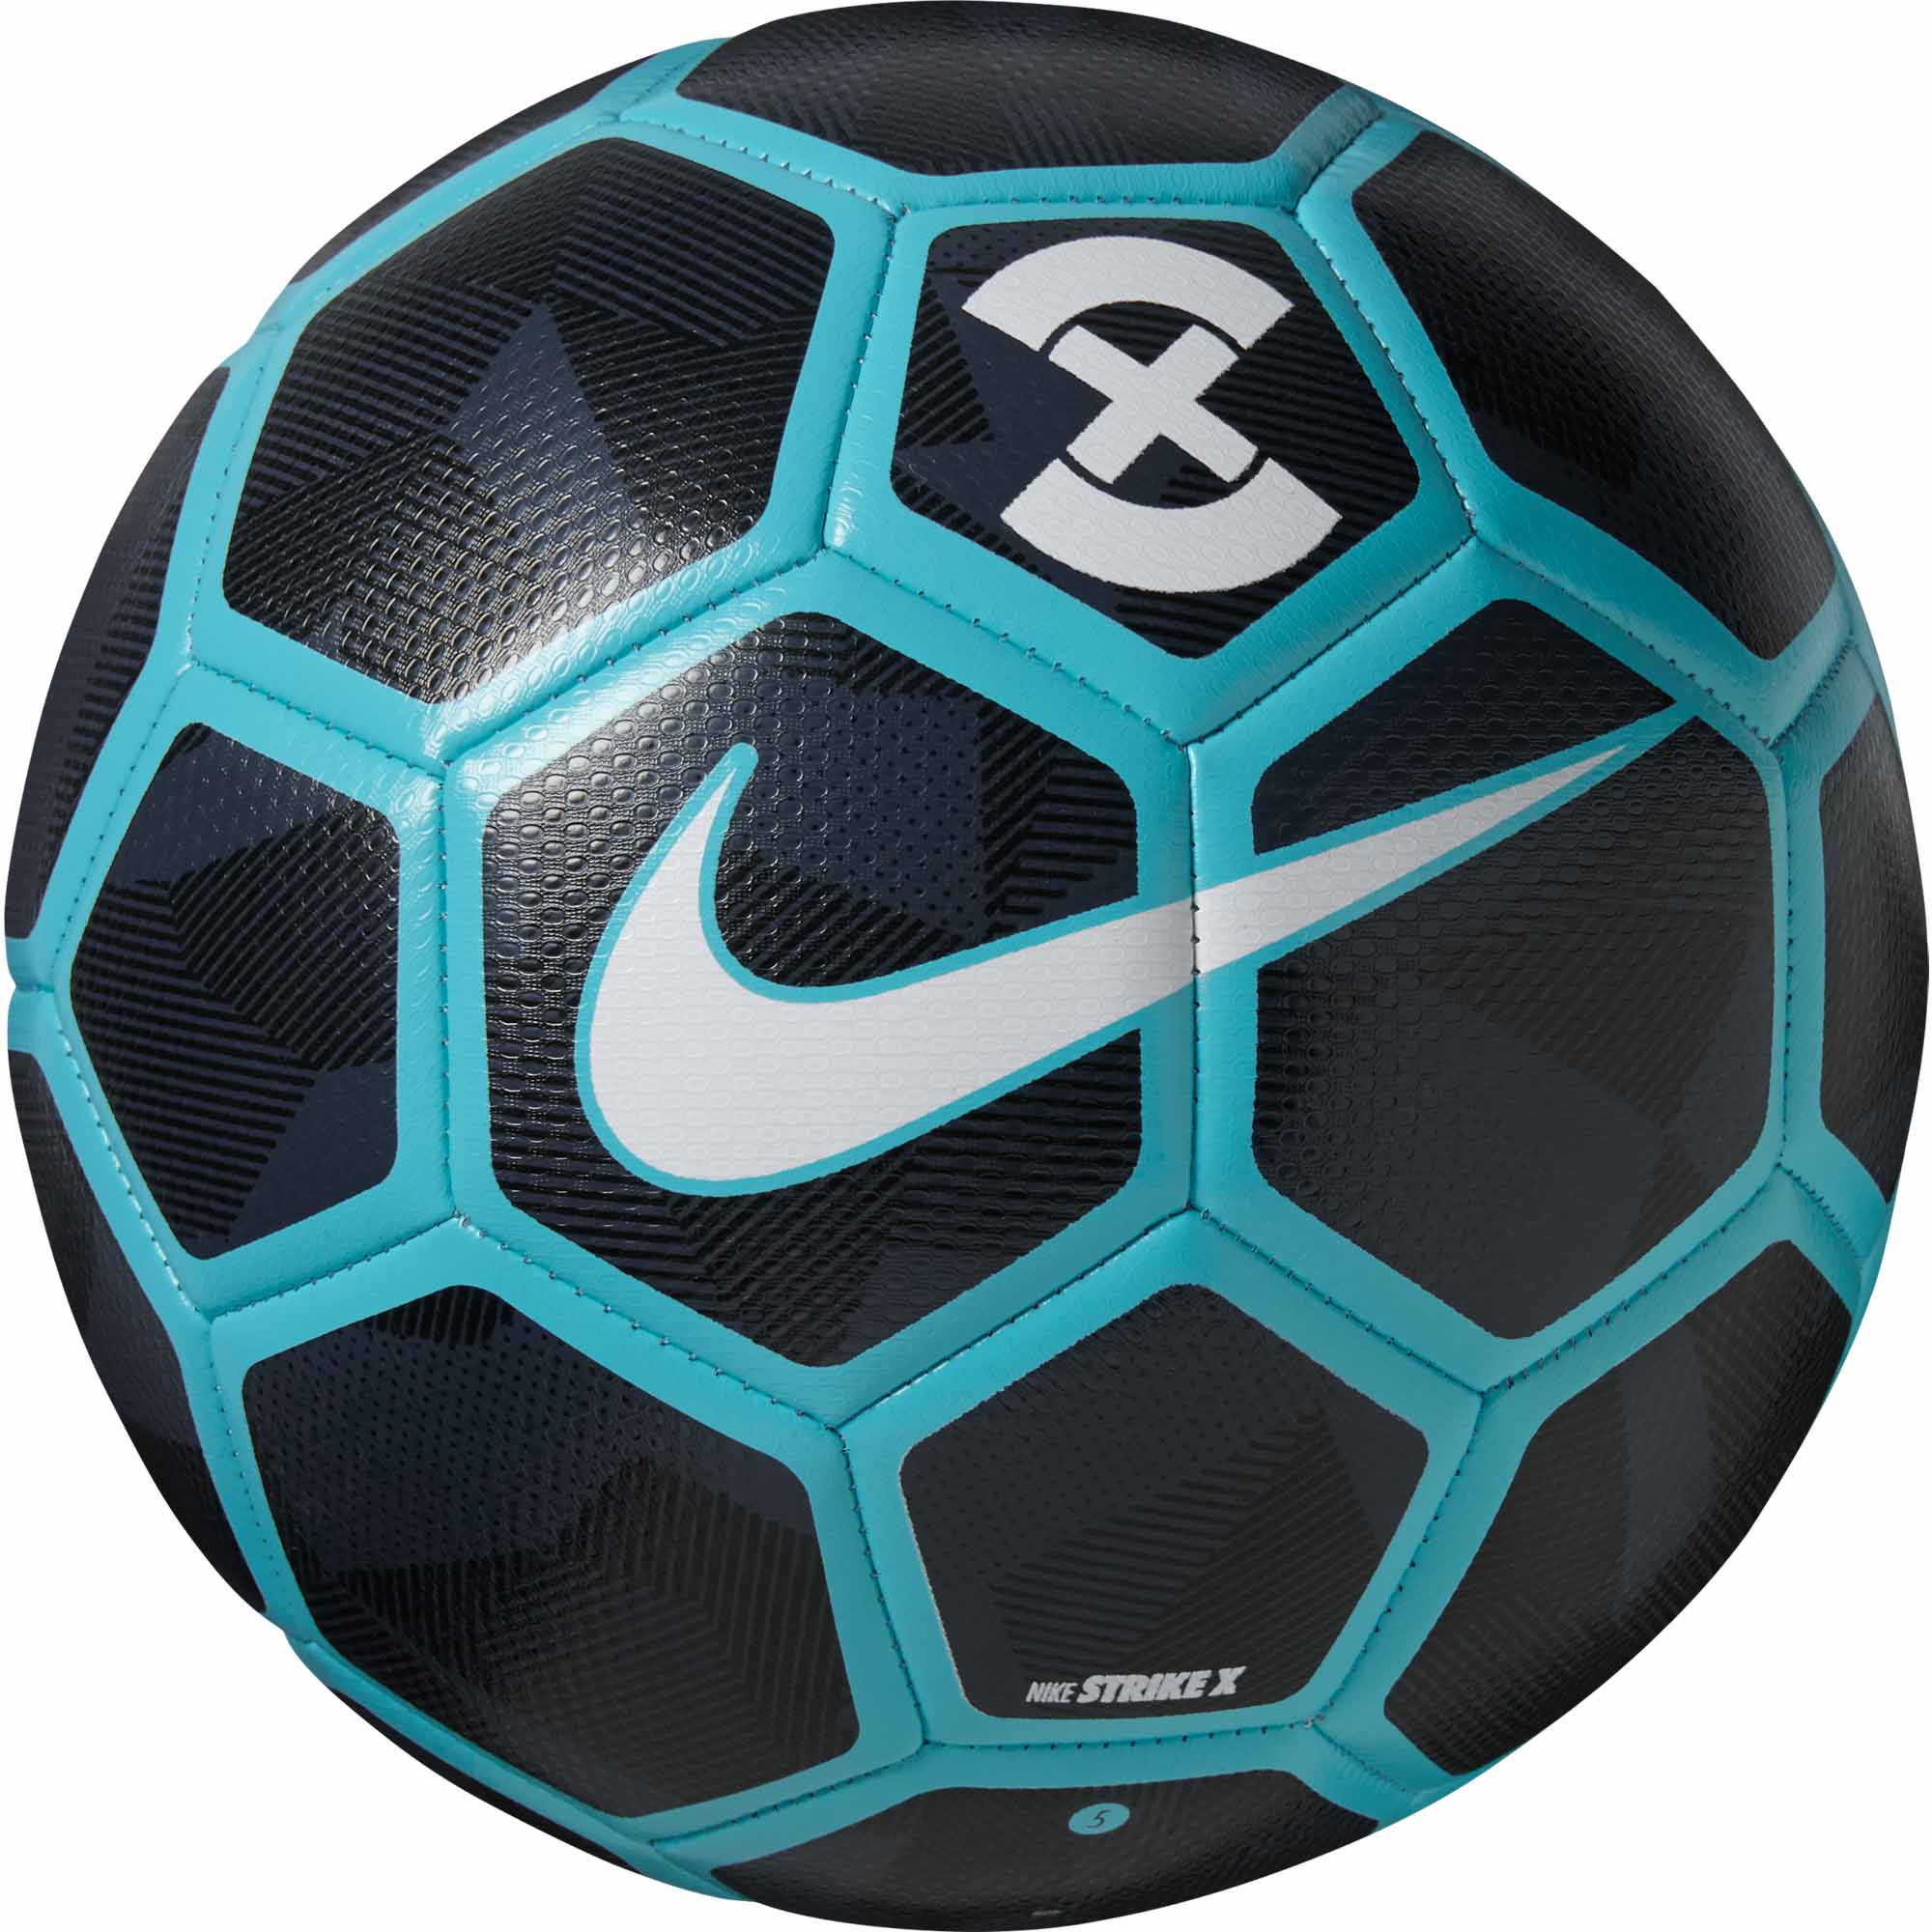 Nike Strike X Soccer Ball - Obsidian \u0026 Gamma Blue